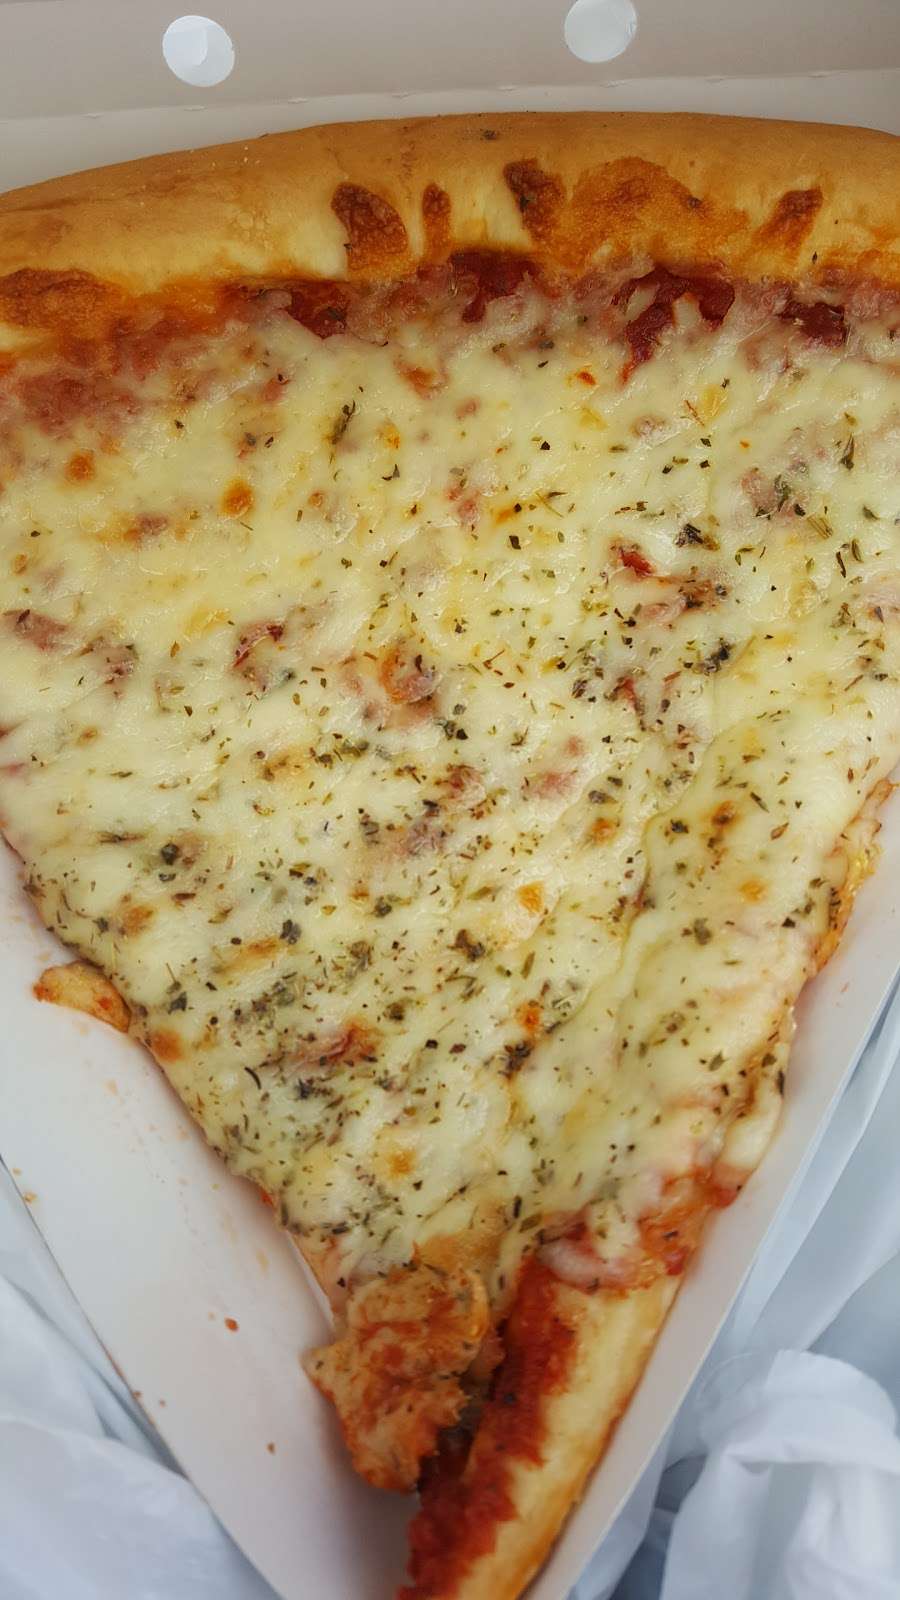 Rosatis Pizza | 1866 E Belvidere Rd, Grayslake, IL 60030, USA | Phone: (847) 543-8800